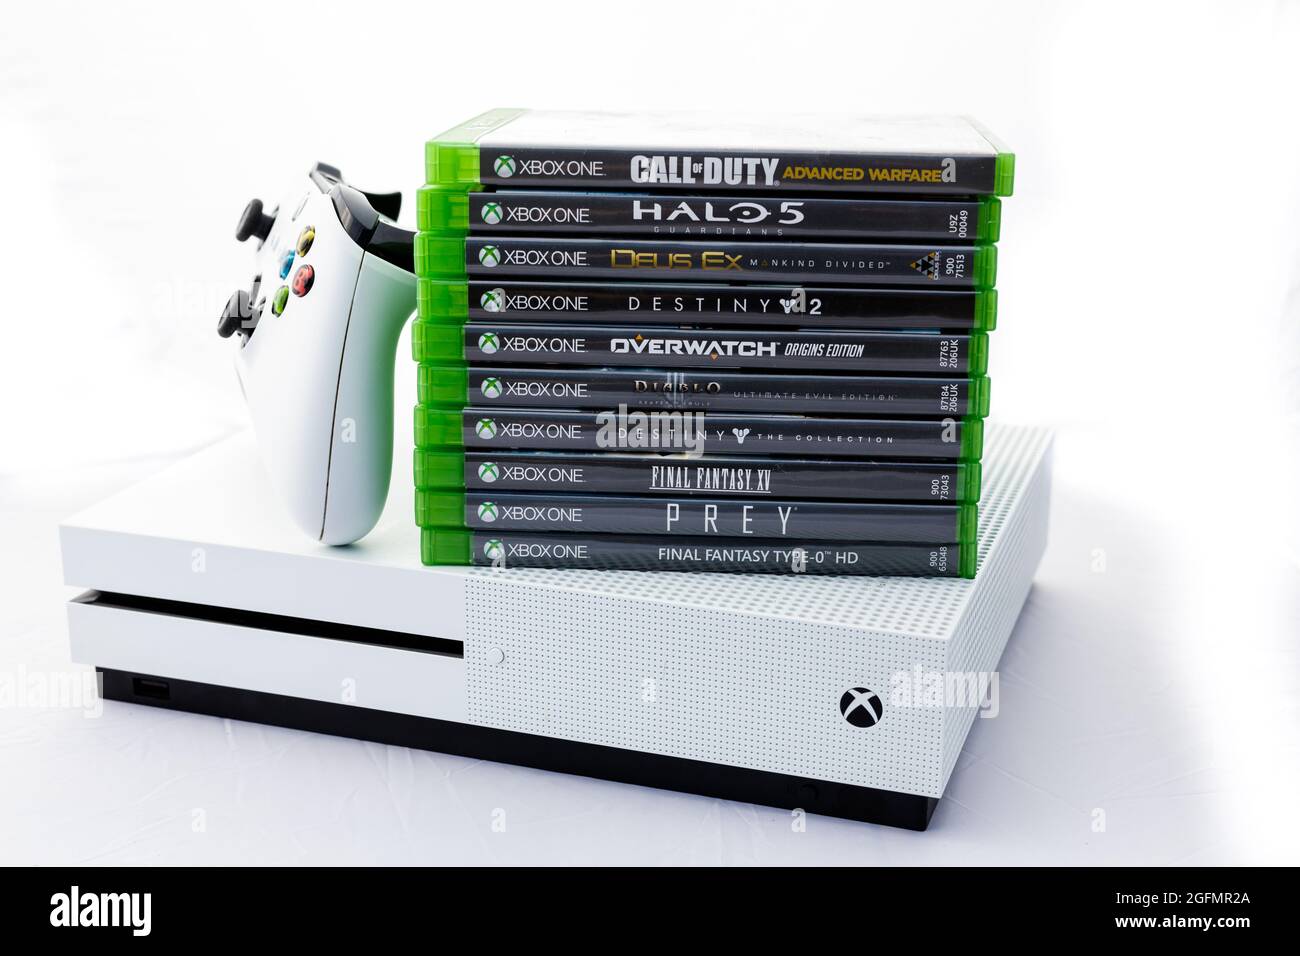 Xbox One S: Sử dụng hệ thống chơi game được đánh giá cao nhất với Xbox One S, cùng trải nghiệm công nghệ 4K HDR và âm thanh vòm sống động. Nhấn vào ảnh để khám phá hệ thống siêu đẳng của Xbox One S!